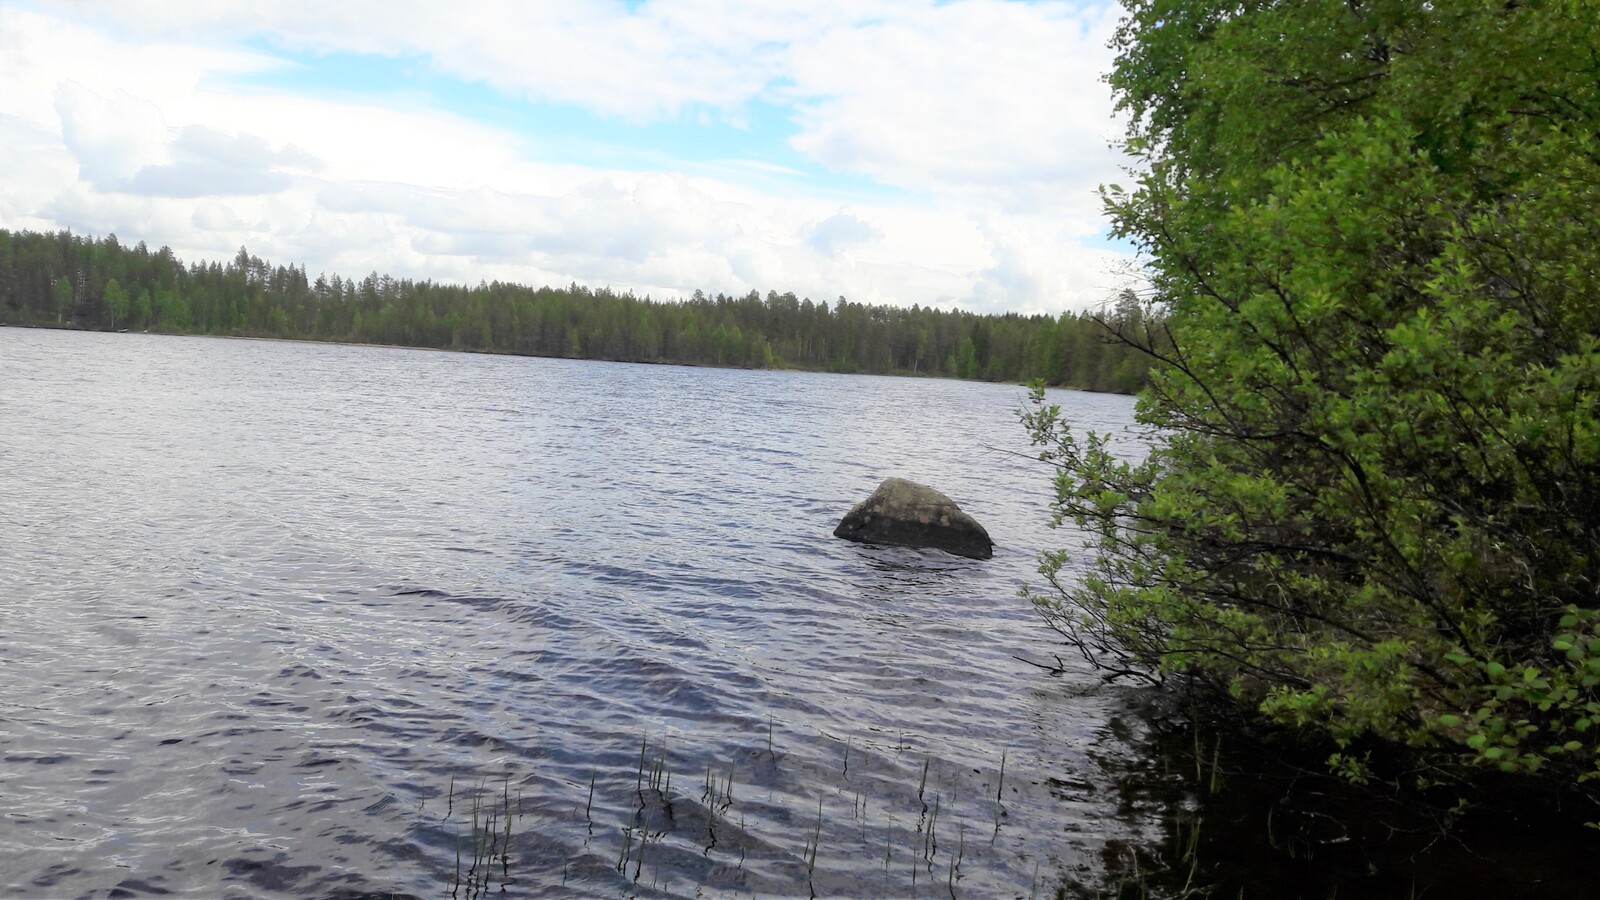 Kesäinen sekametsä reunustaa järveä. Rantavedessä on suurehko kivi.